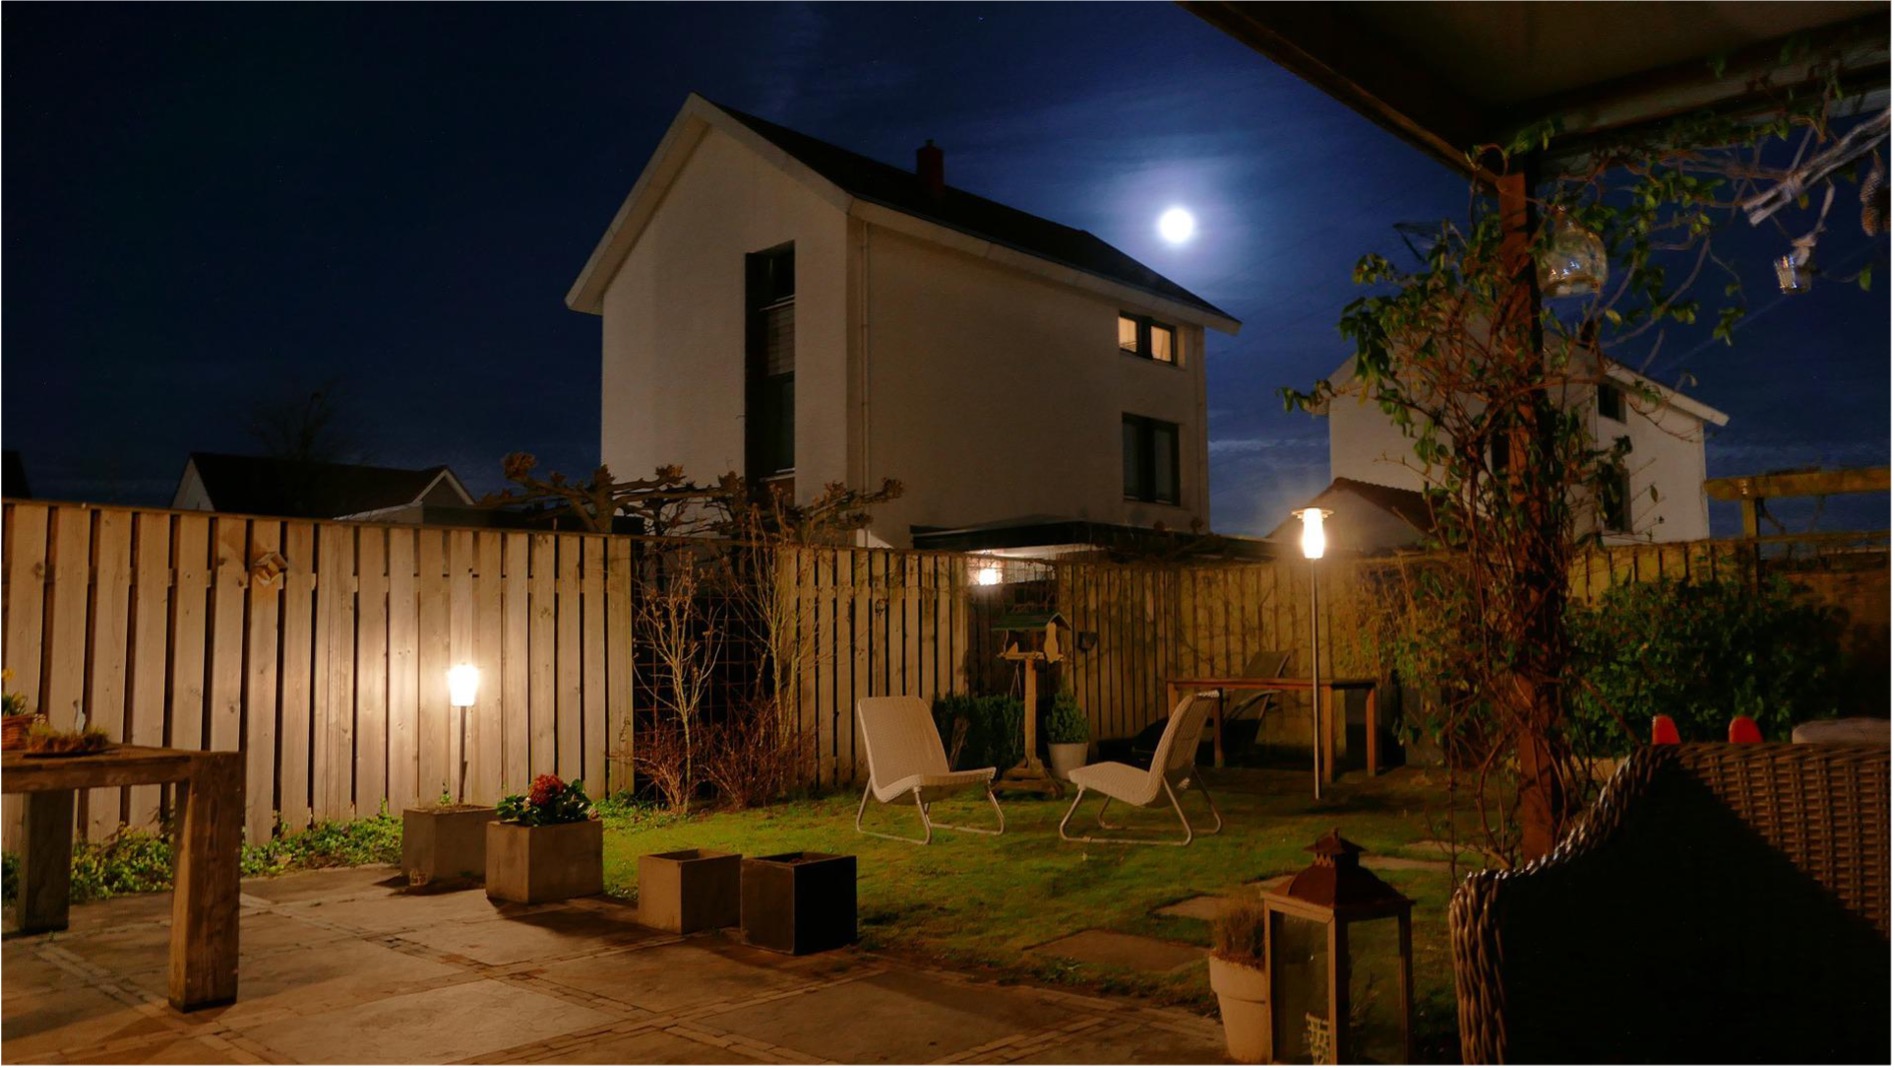 Jak si užít venkovní posezení až do noci? Odpověď je solární osvětlení pergoly.